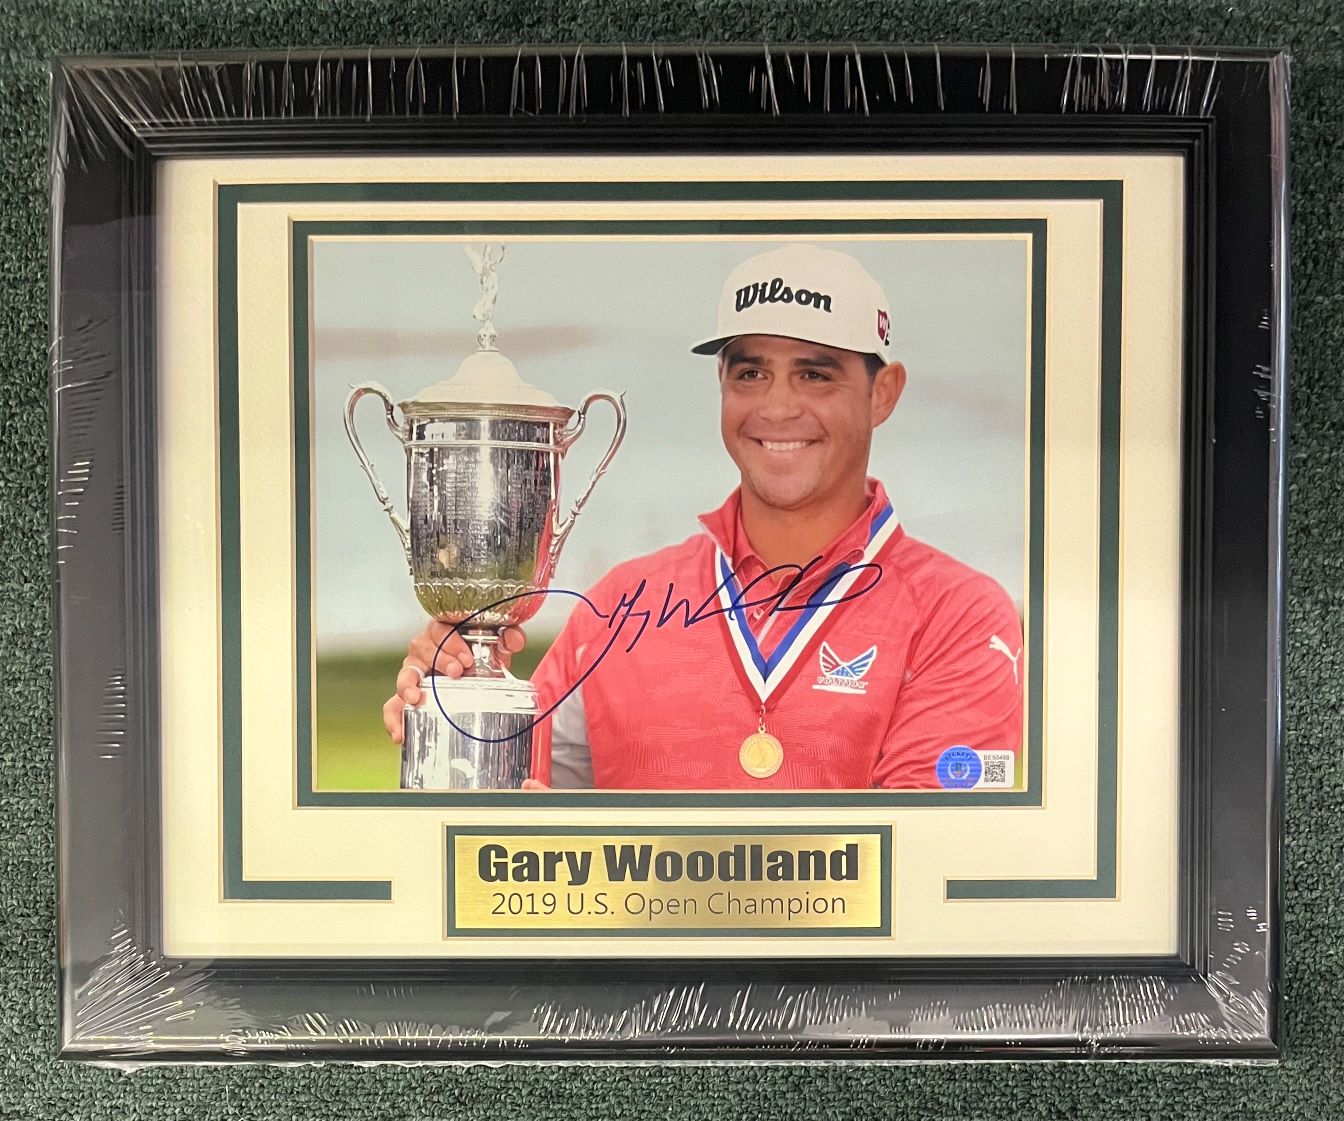 Gary Woodland 2019 U.S. Open Champ Signed Photo